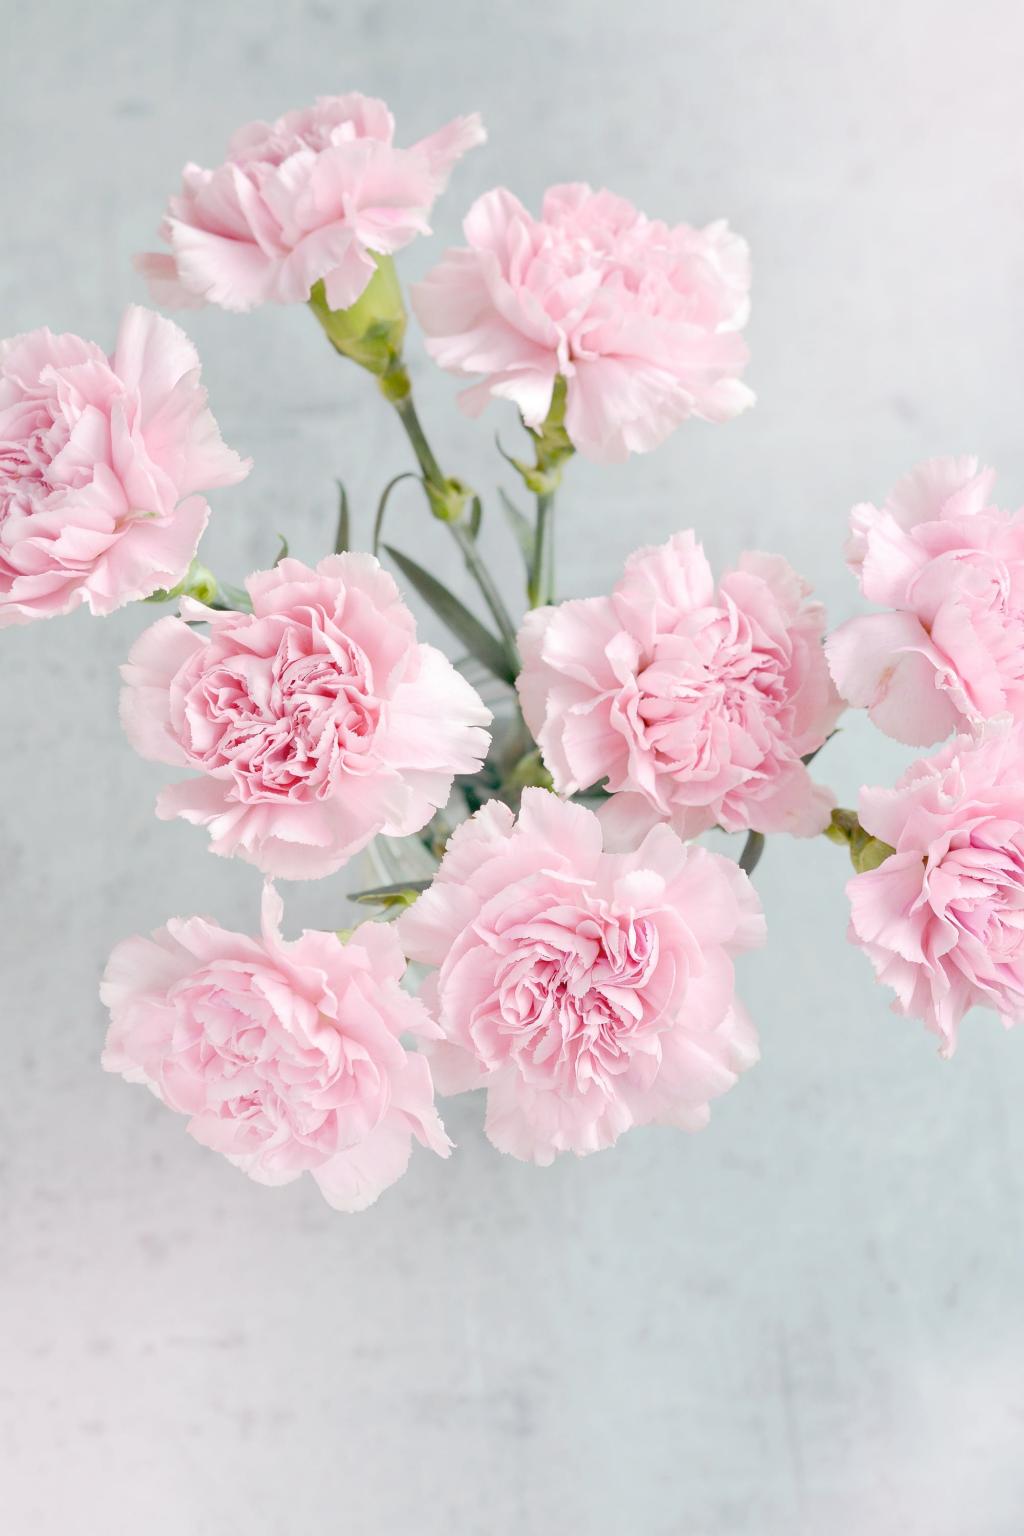 粉红色的鲜花花束高清壁纸